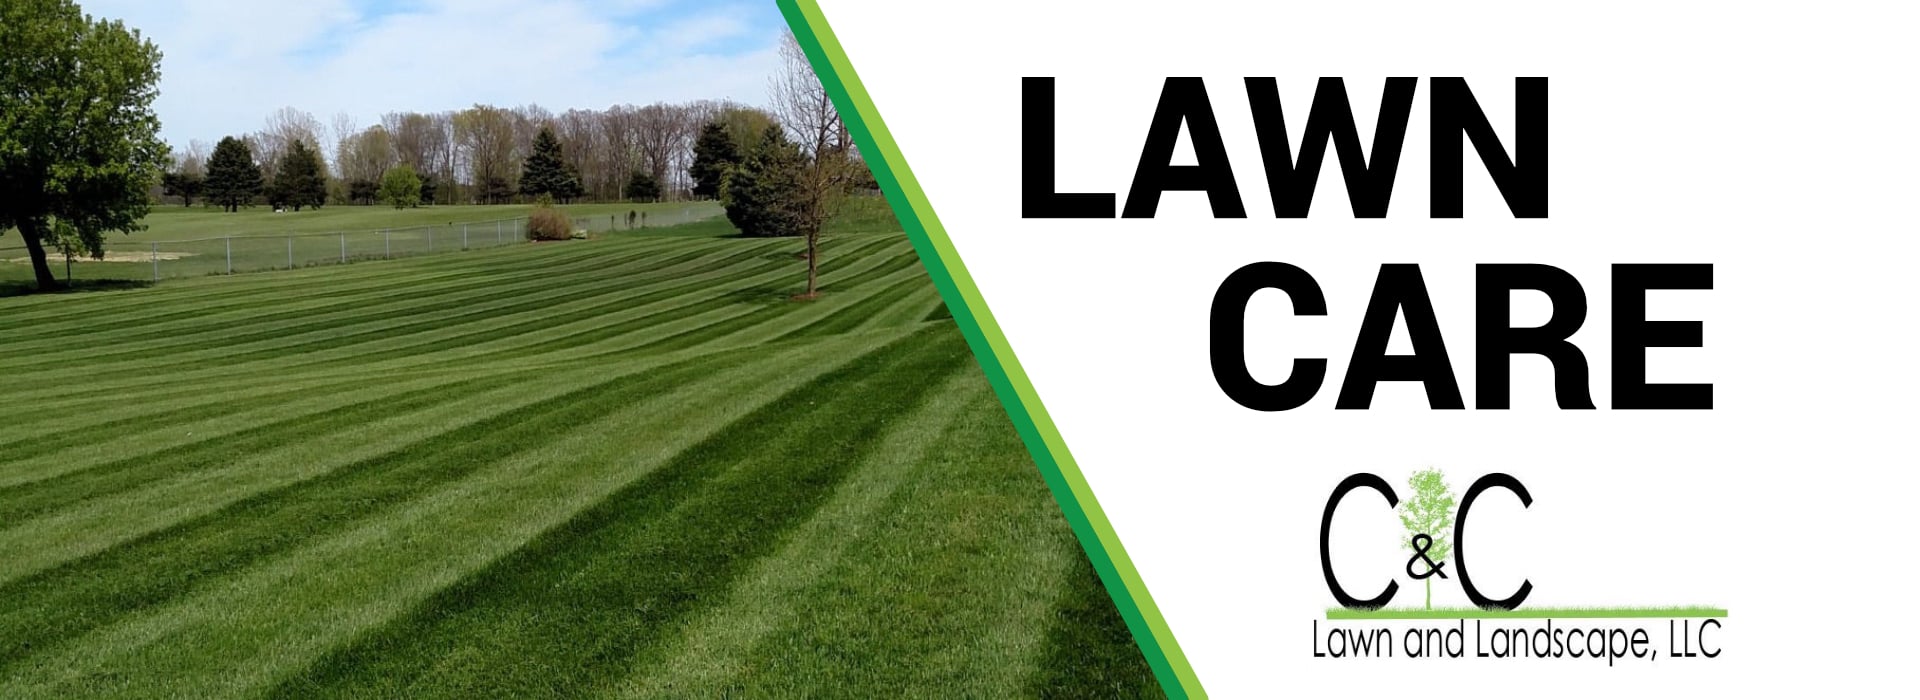 CC Lawn Care